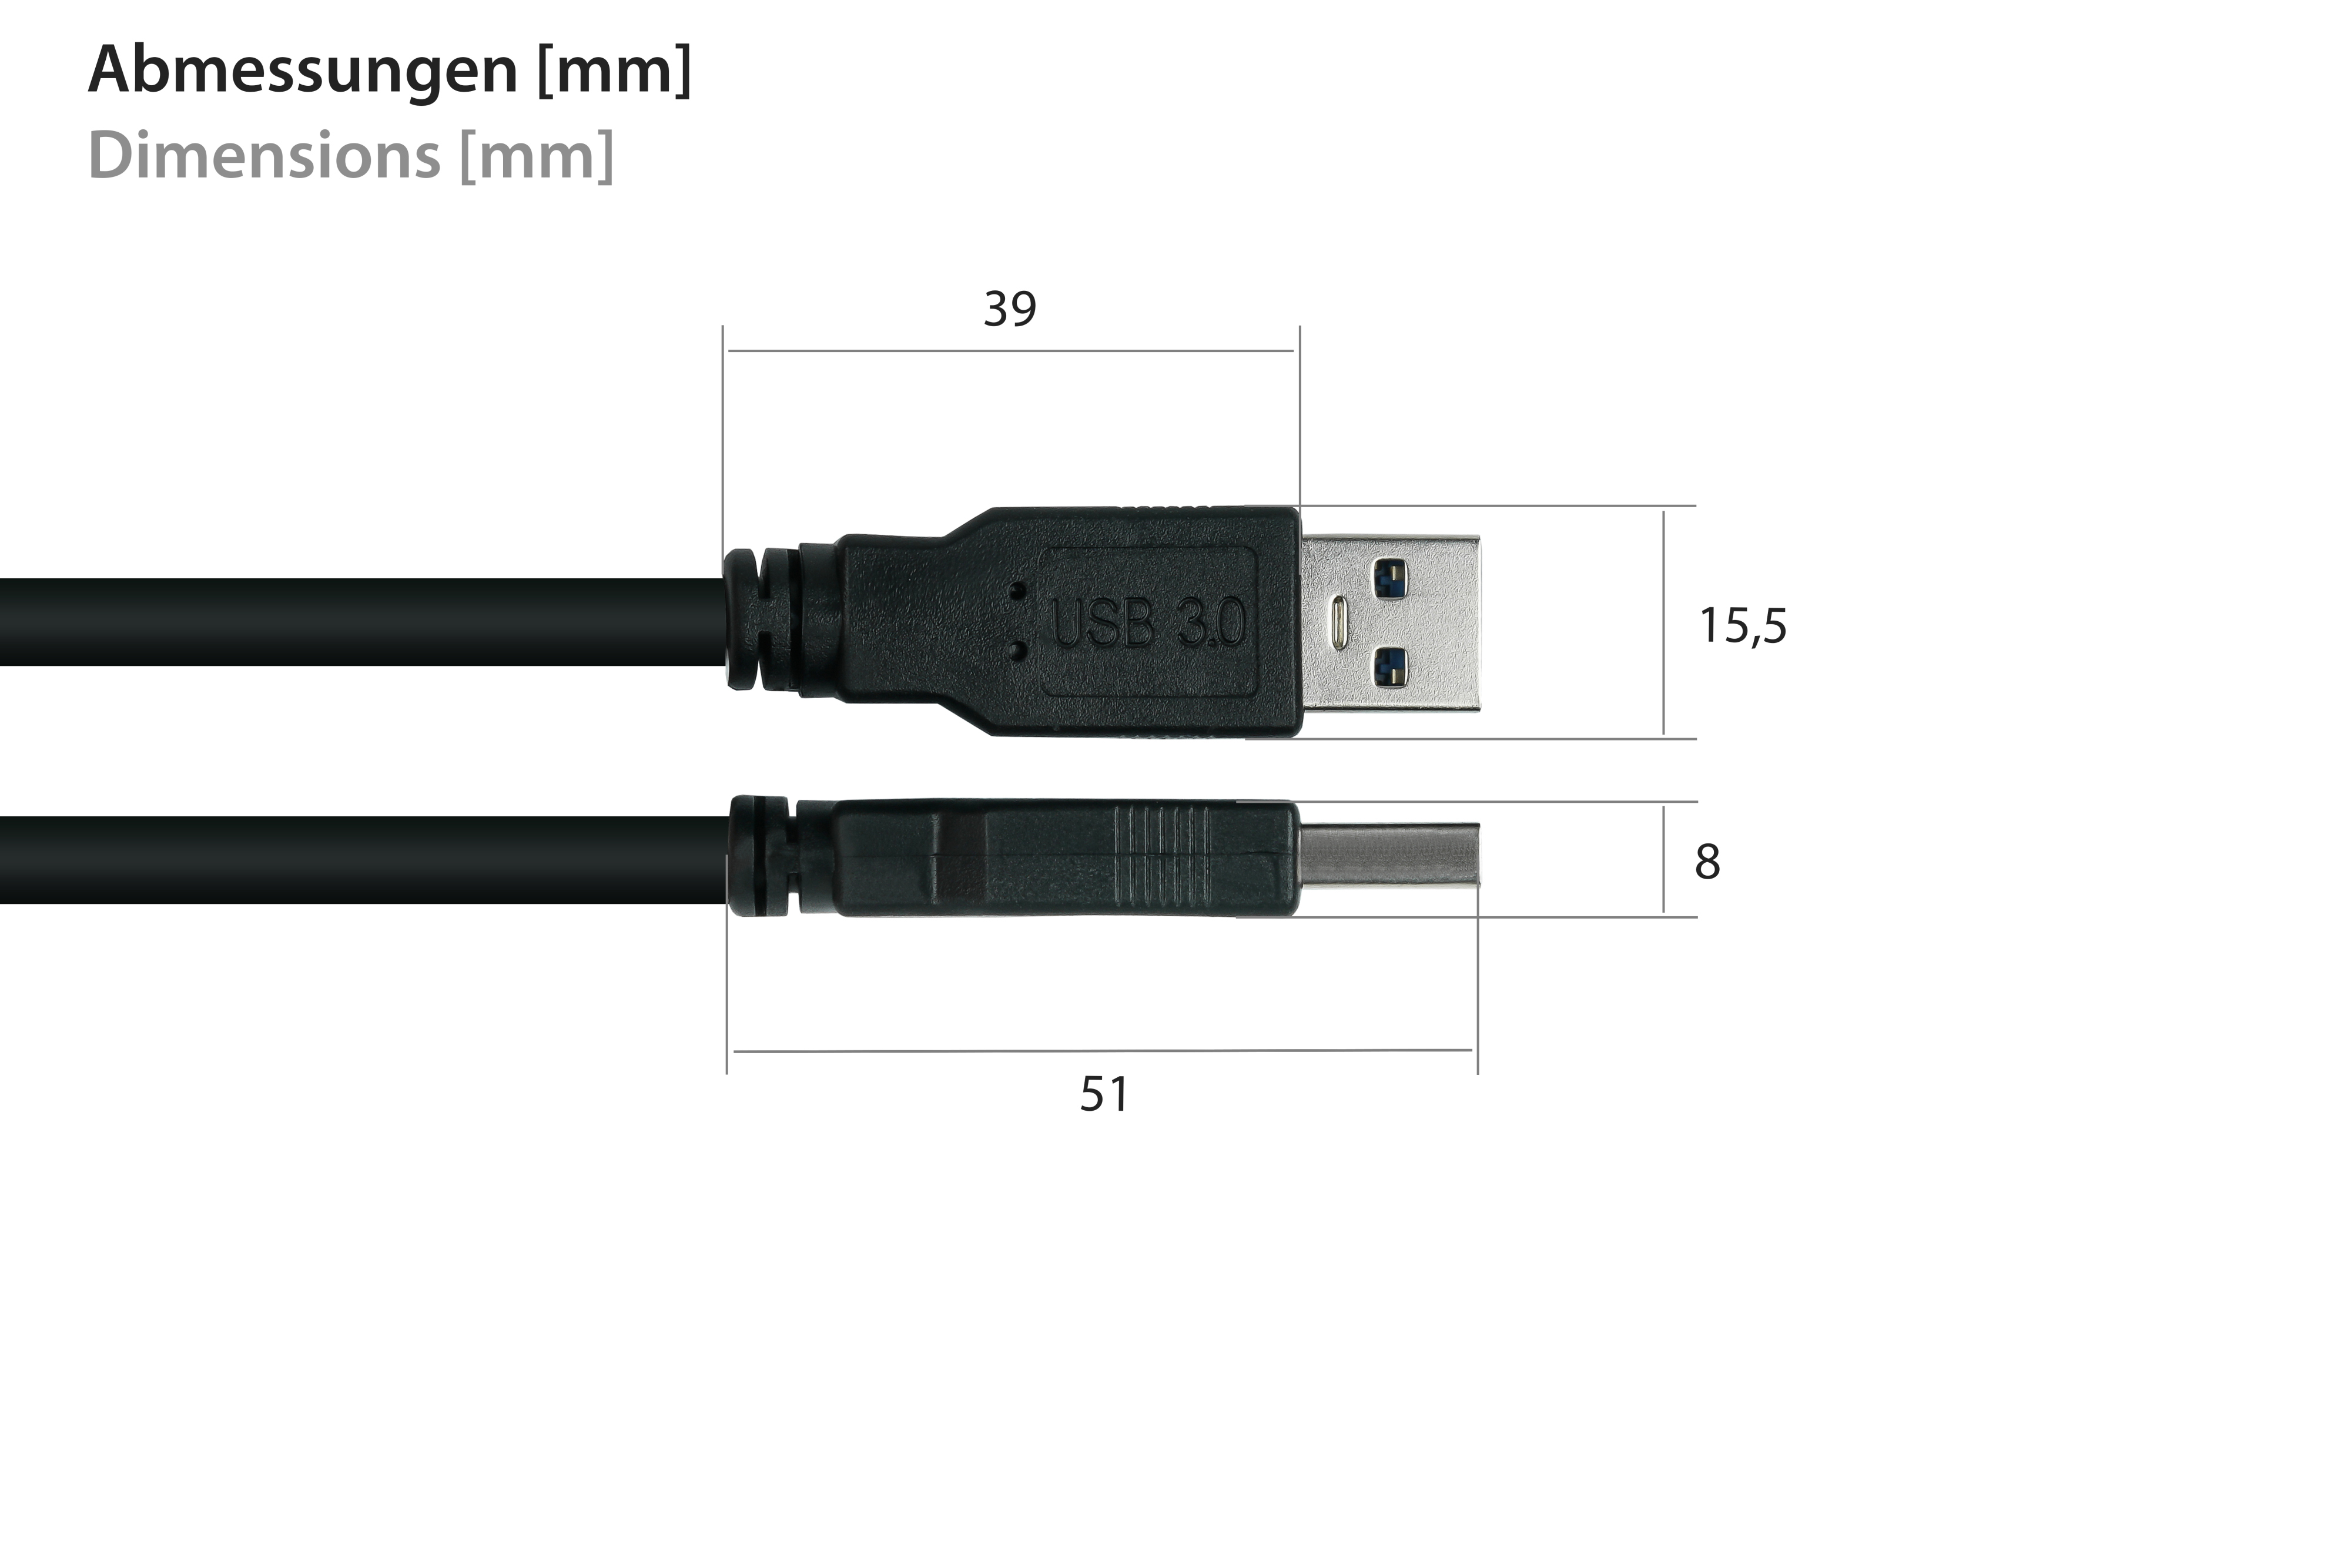 USB schwarz AWG28 3.0 an AWG24, / Stecker A A,Premium, UL, Kabel KUPFER, KABELMEISTER Stecker